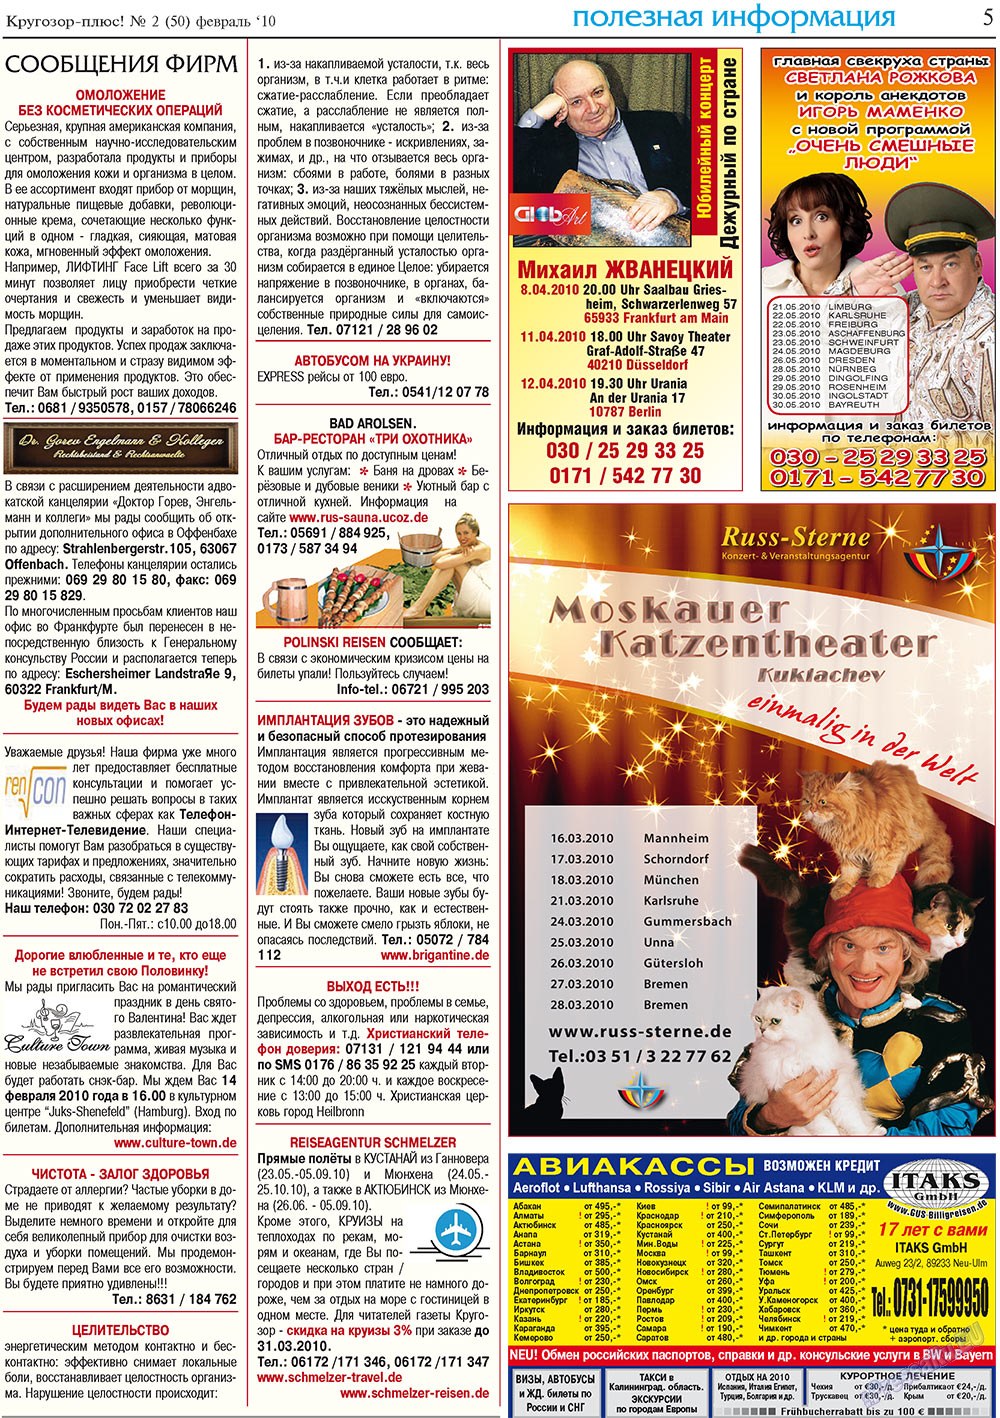 Кругозор плюс!, газета. 2010 №2 стр.5